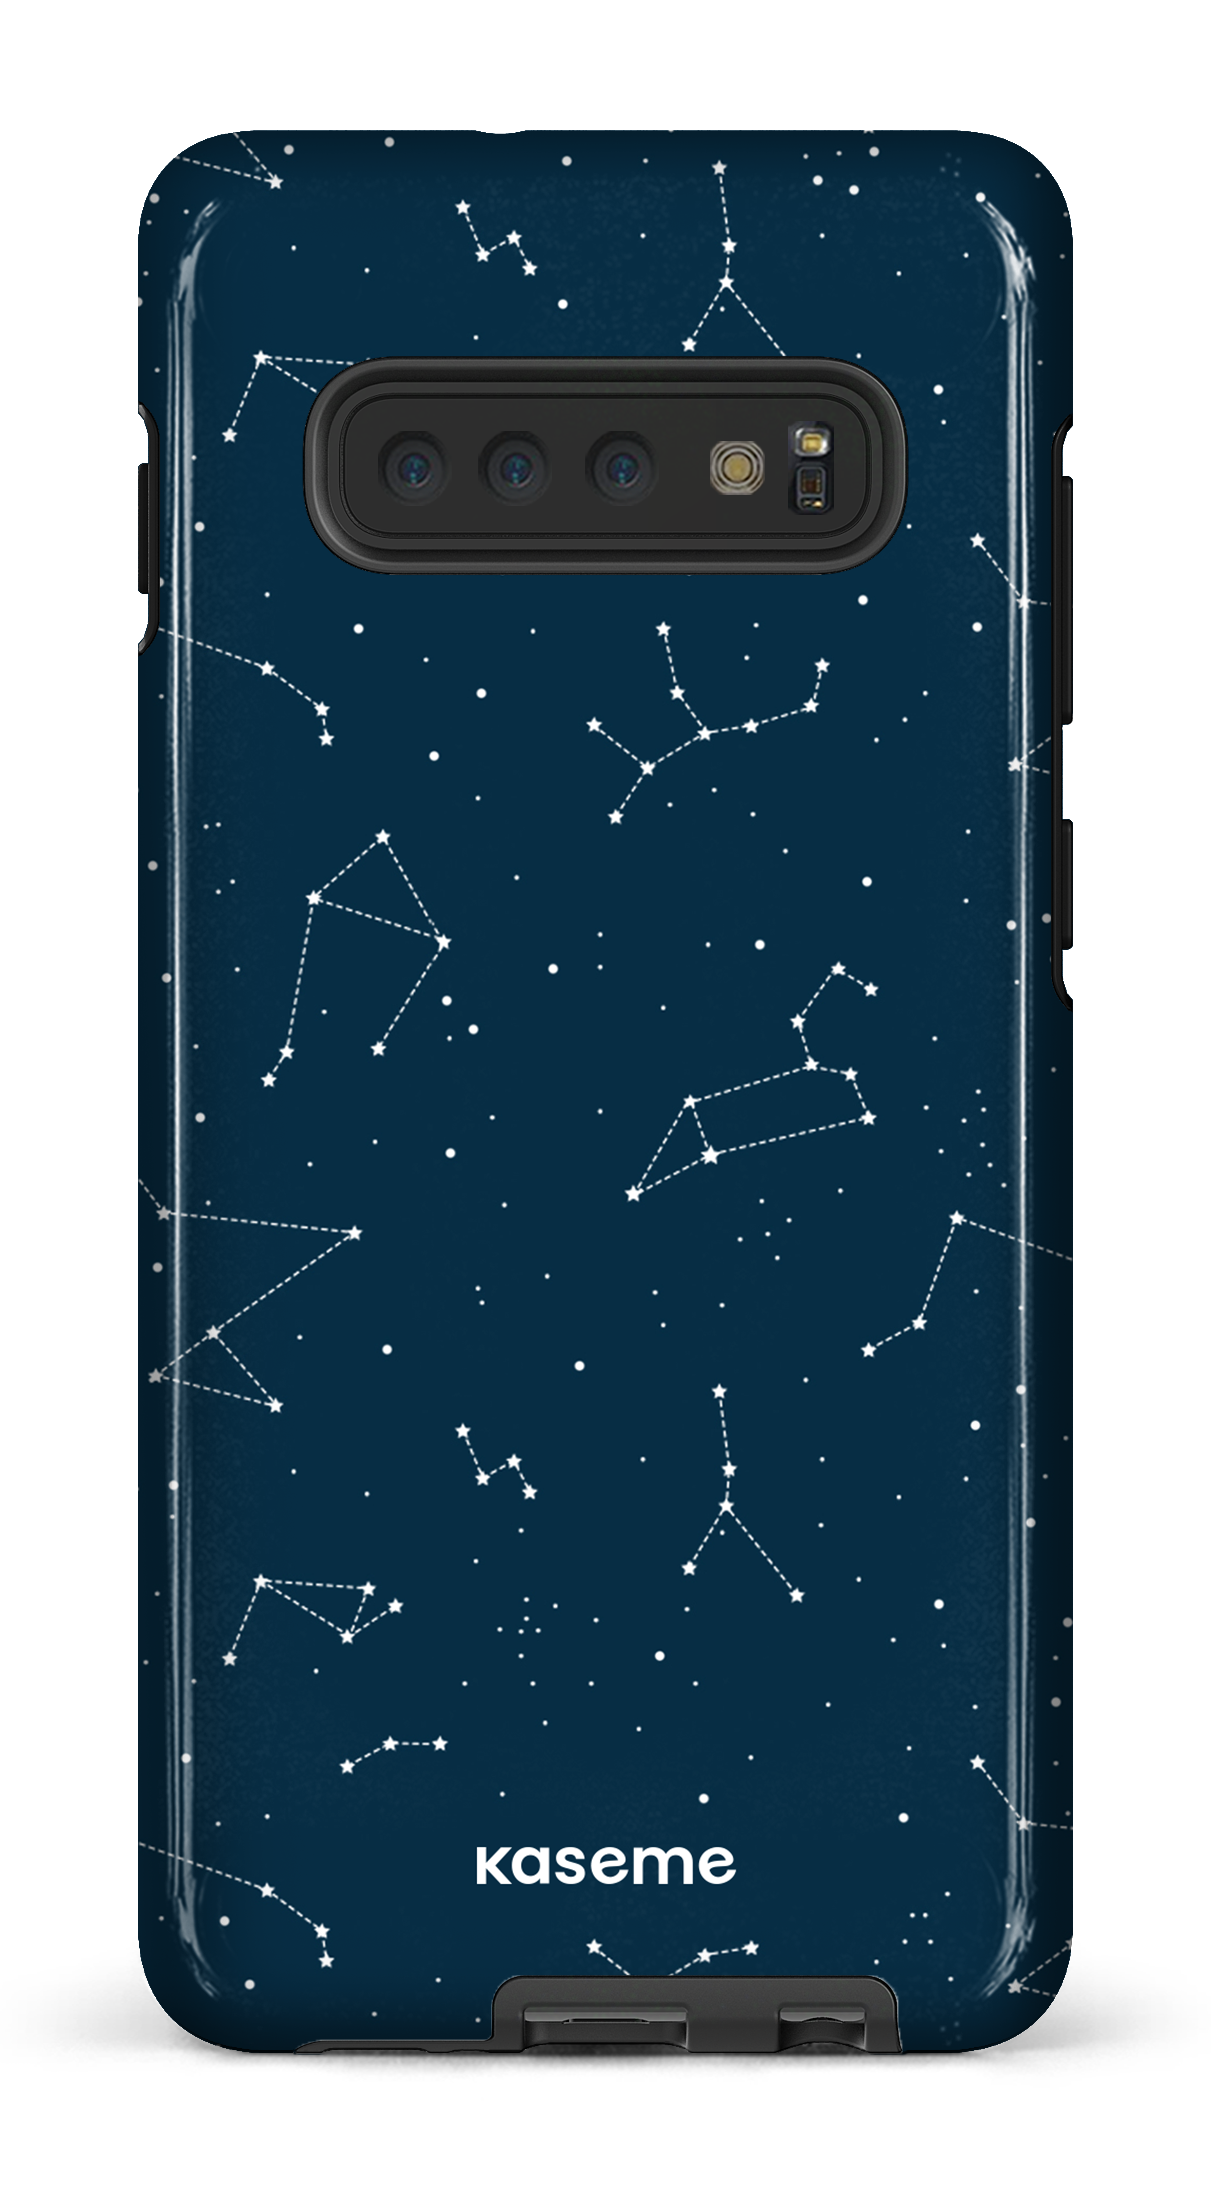 Cosmos - Galaxy S10 Plus